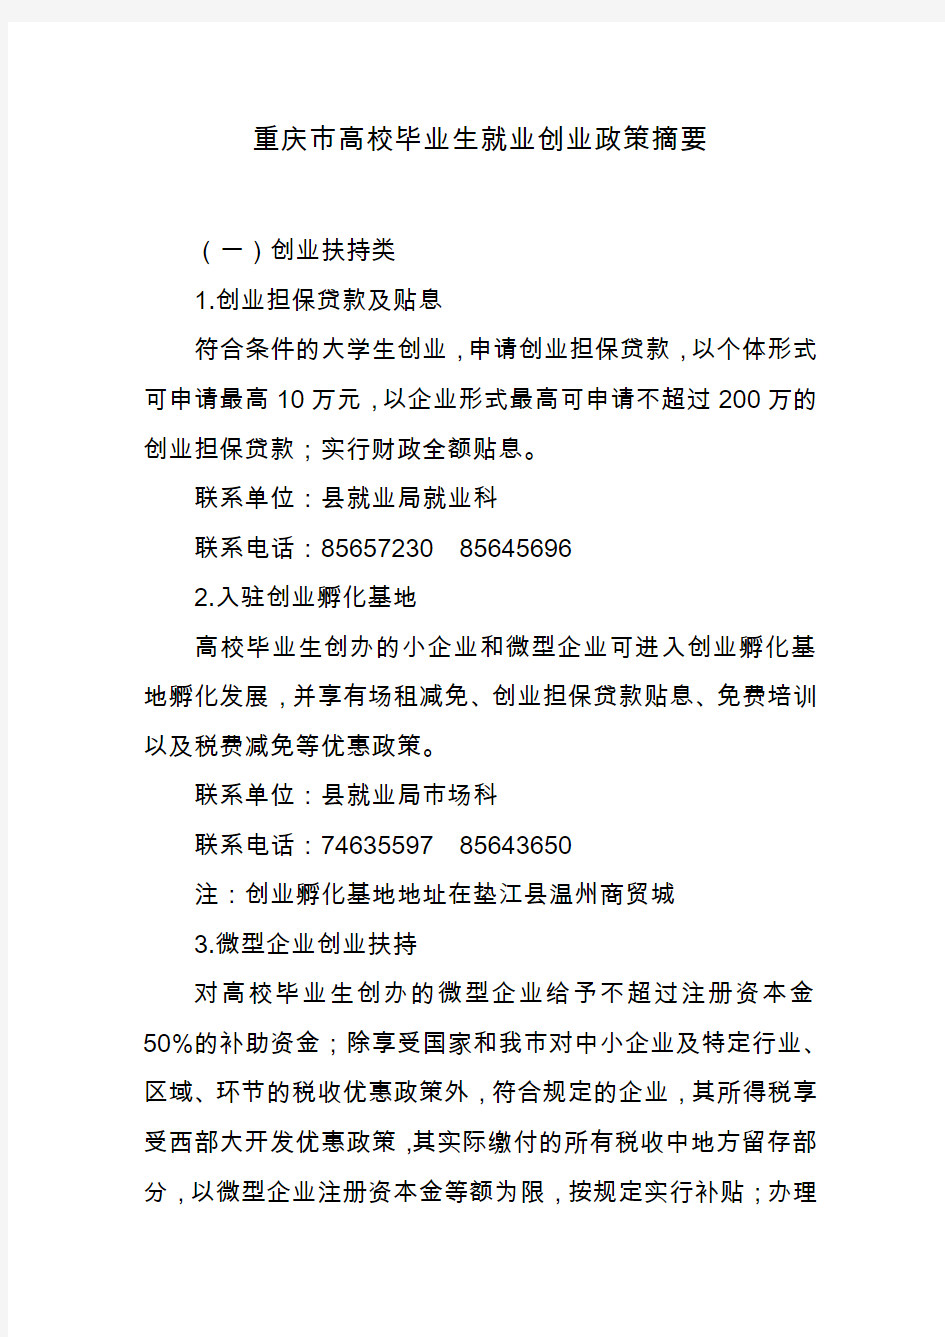 重庆市高校毕业生就业创业政策摘要